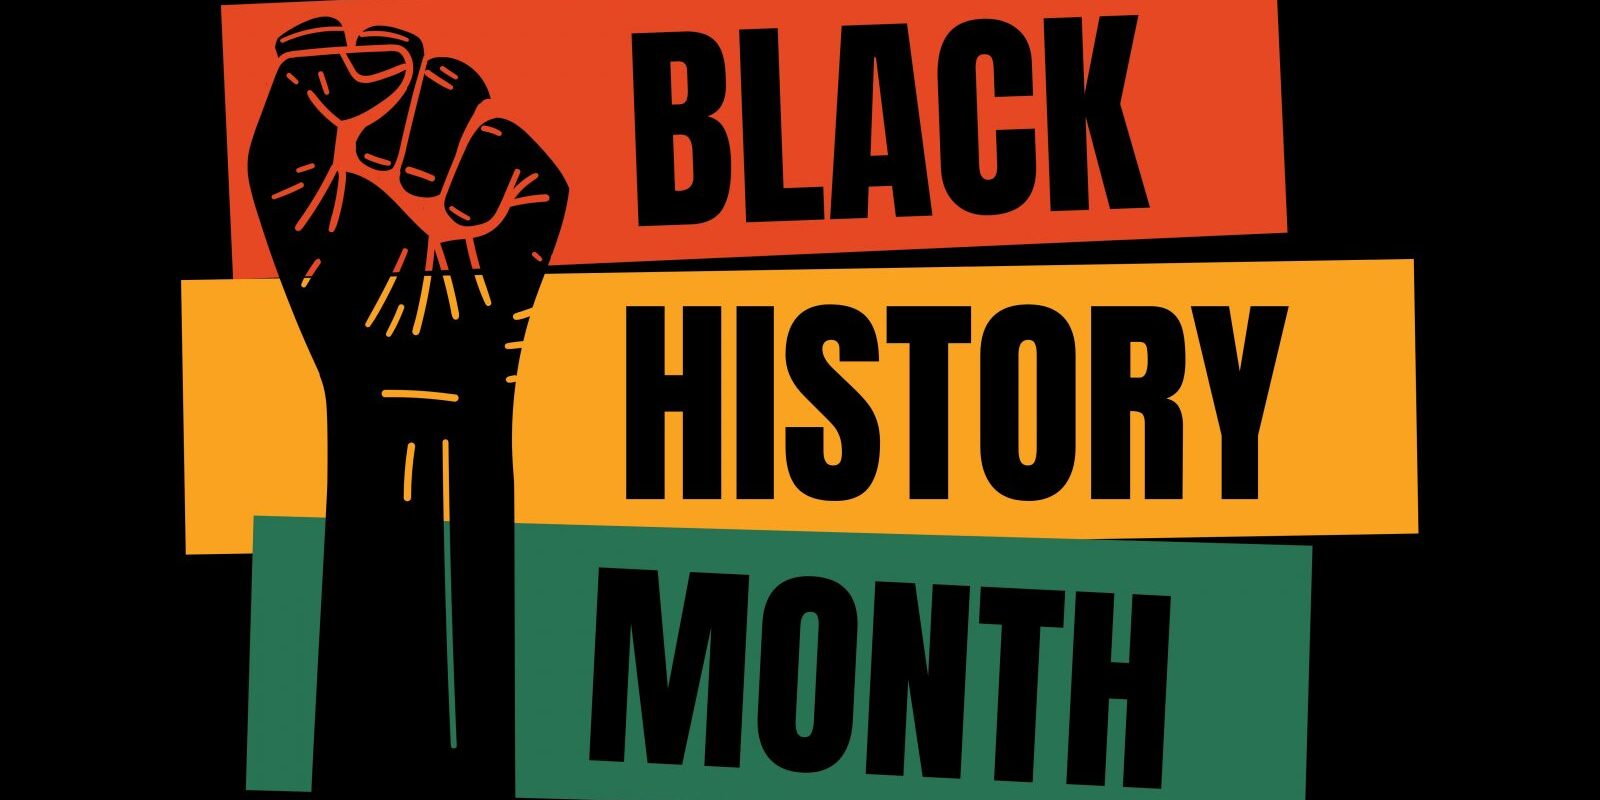 Quatro filmes para ver durante o Black History Month